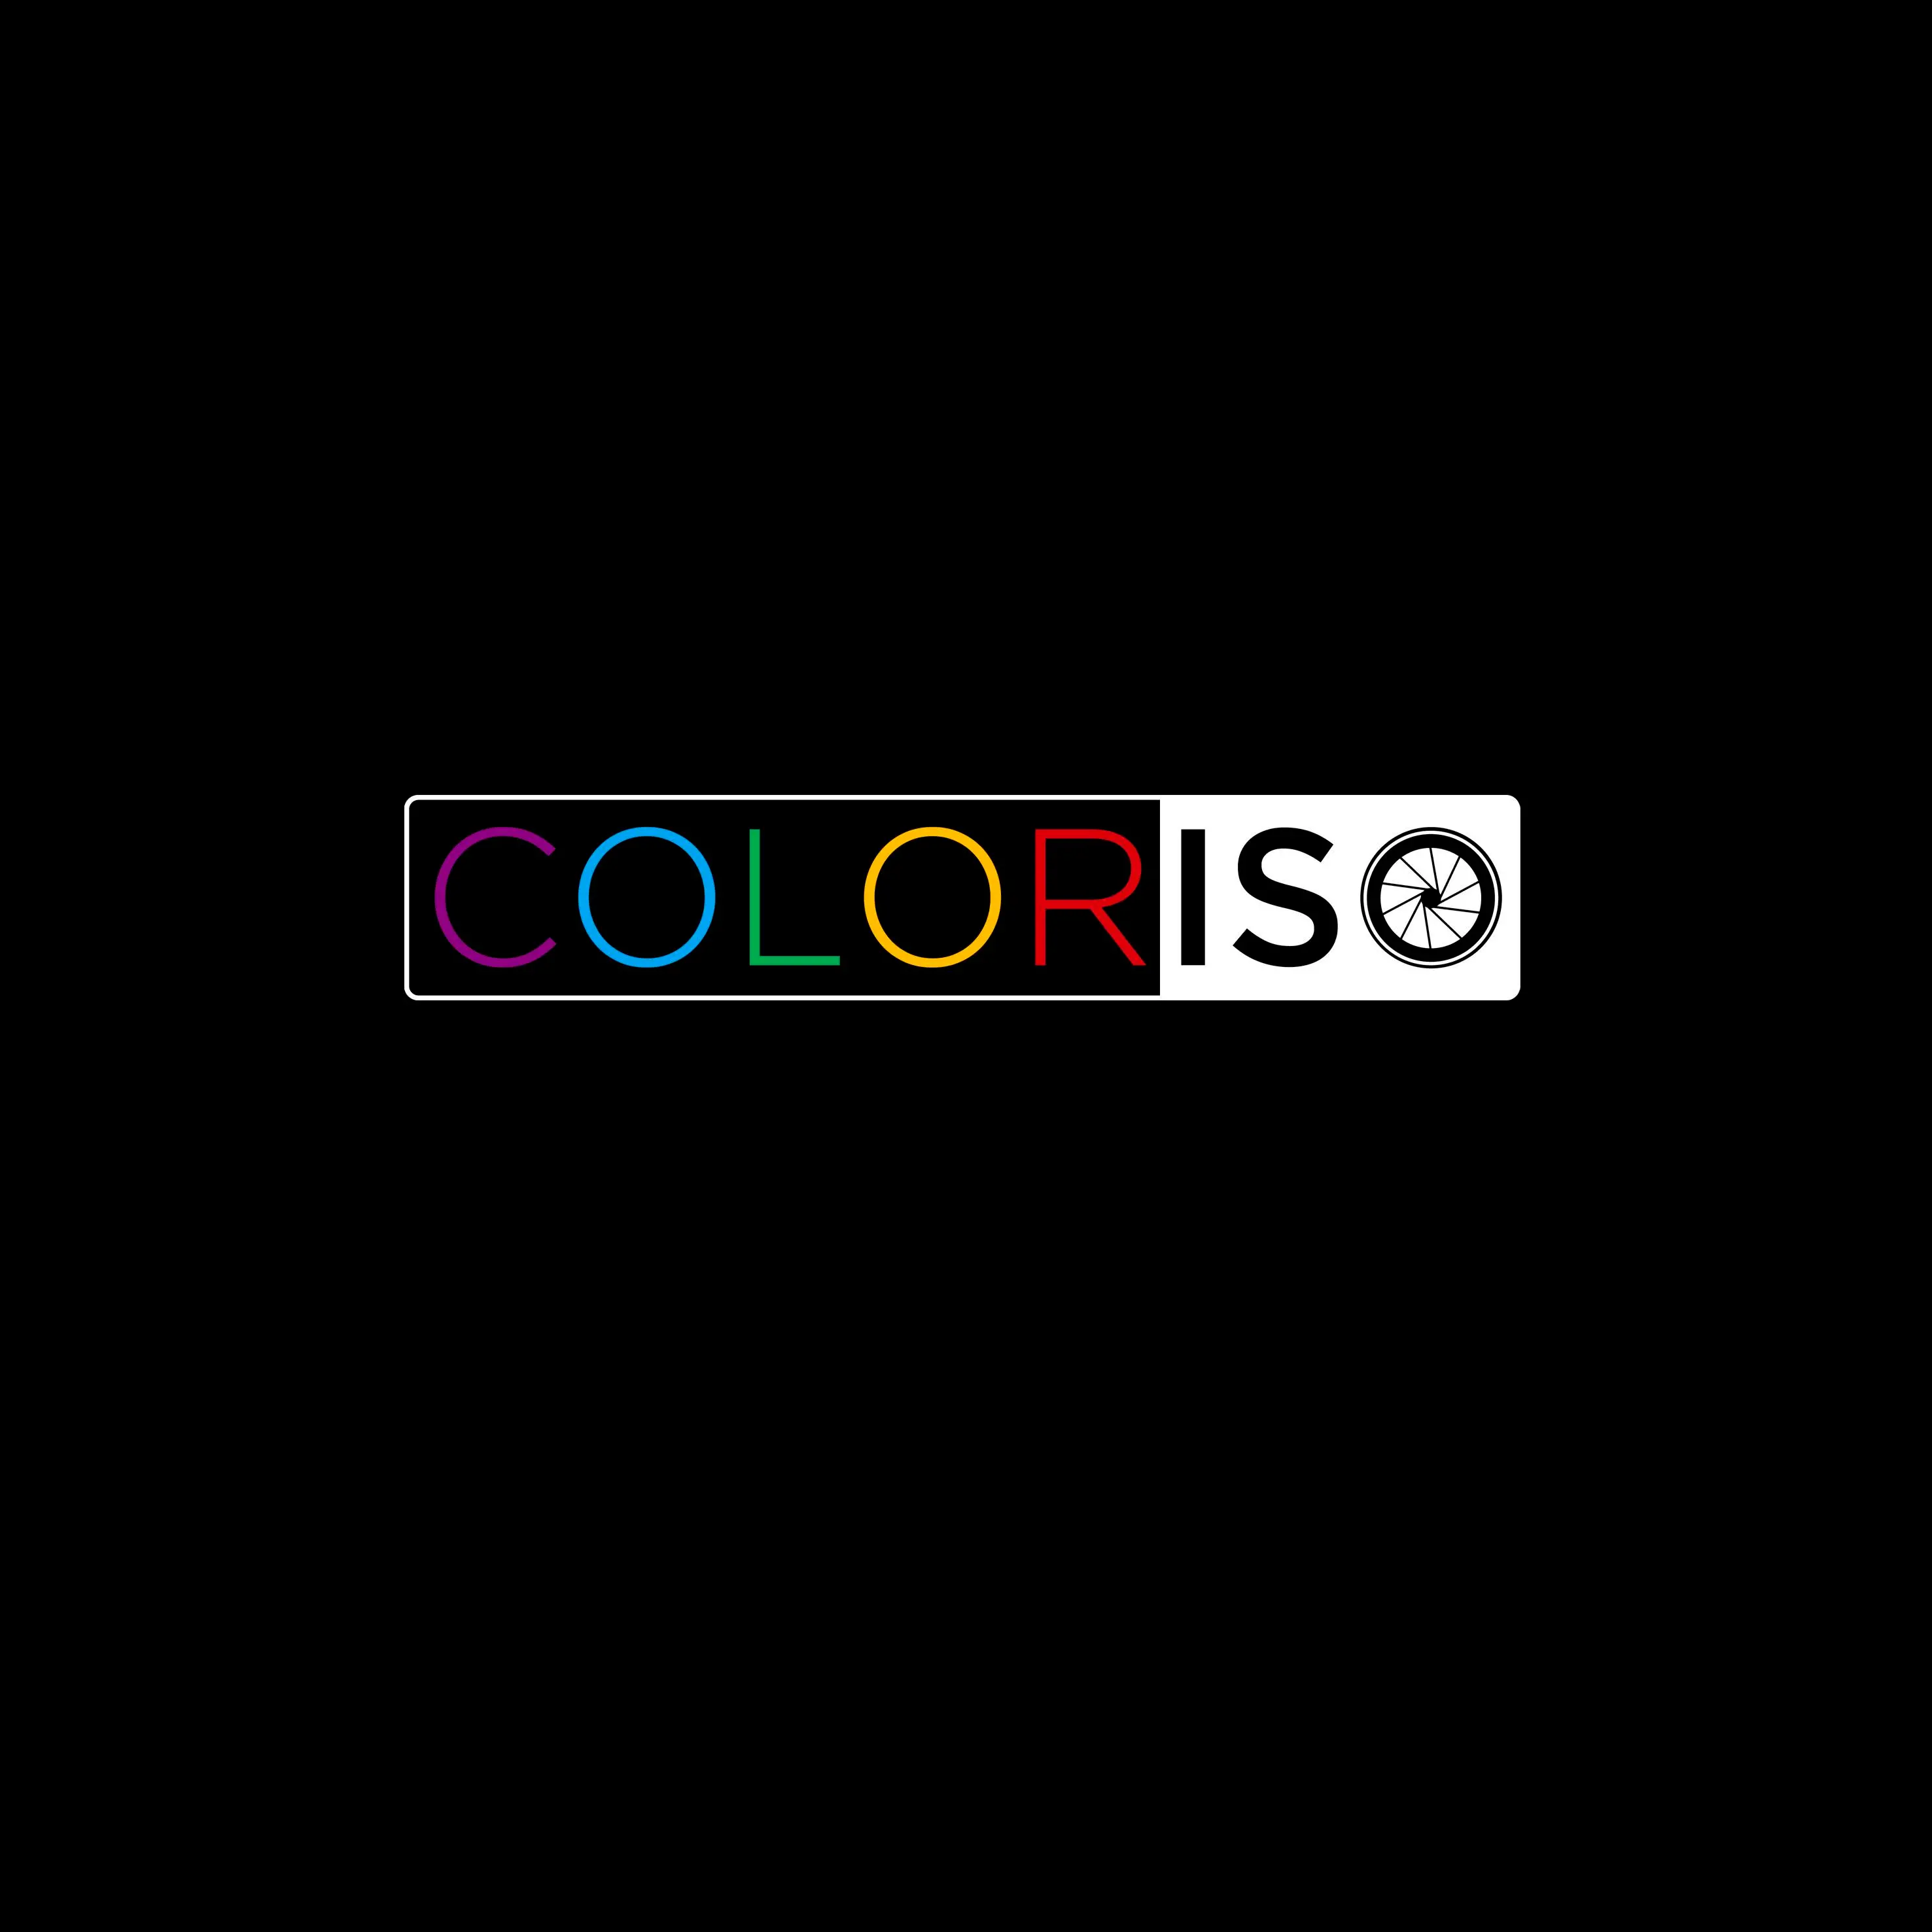 Coloriso